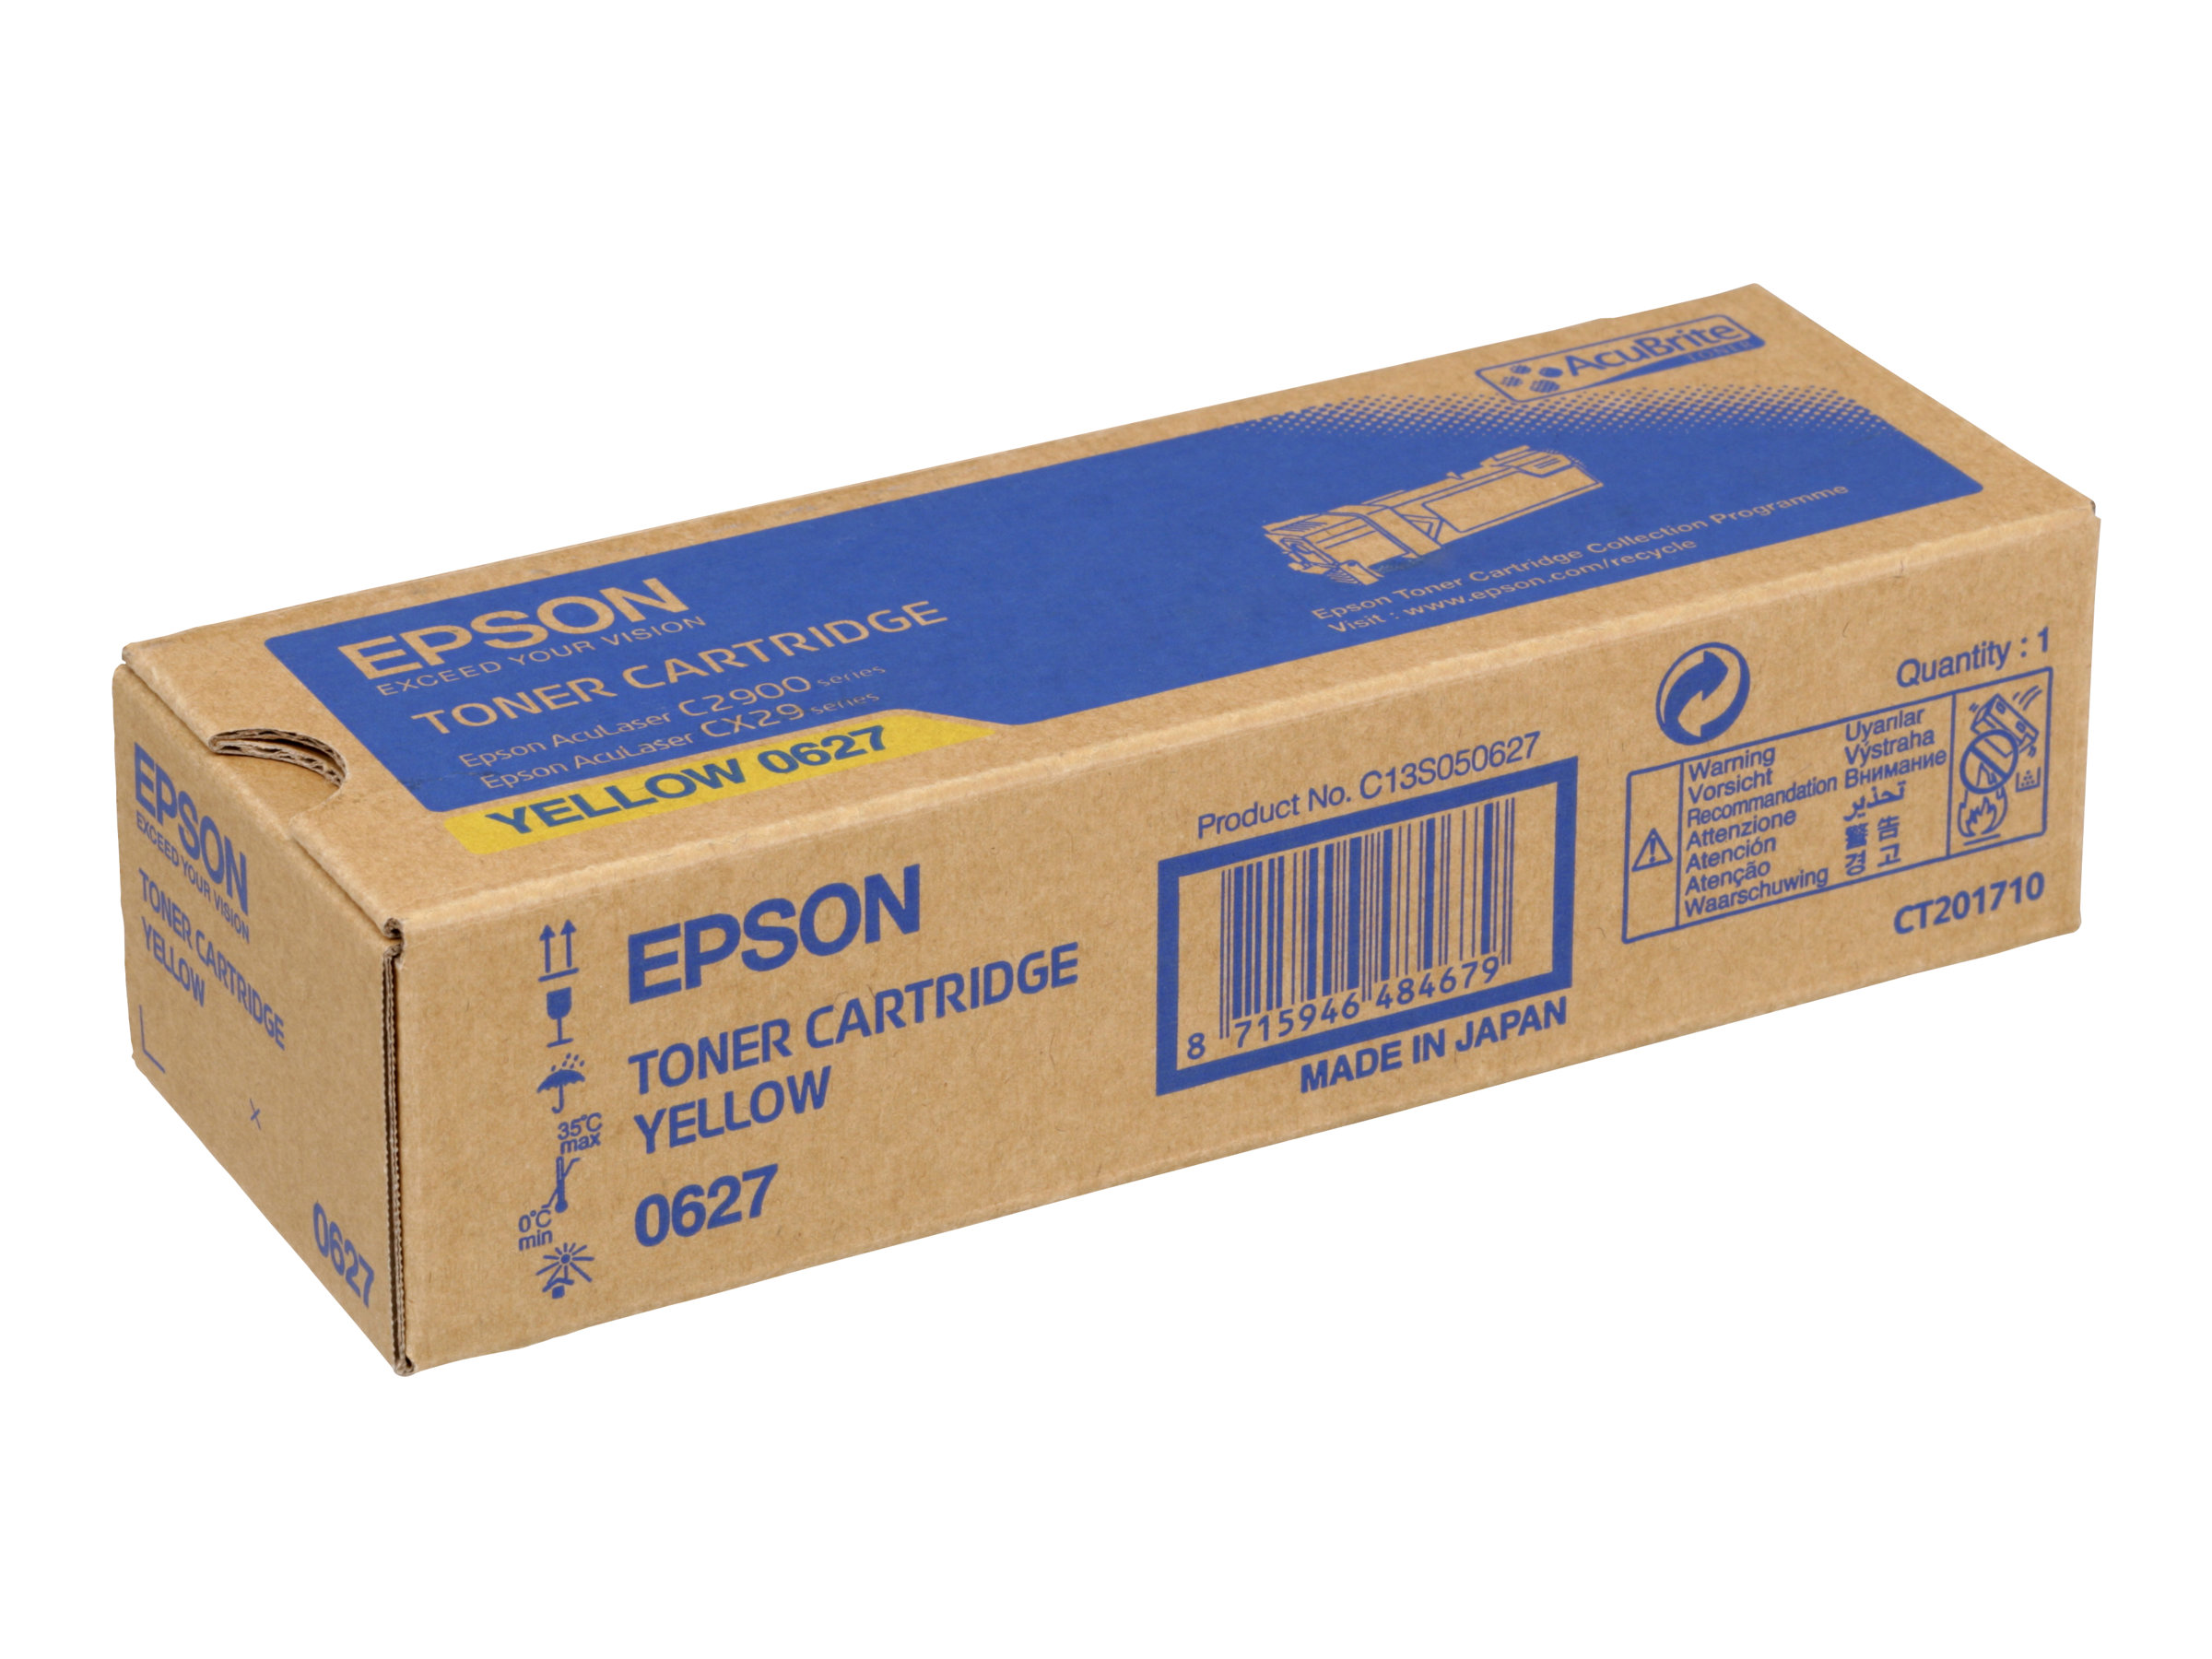 Epson - Gelb - Original - Tonerpatrone